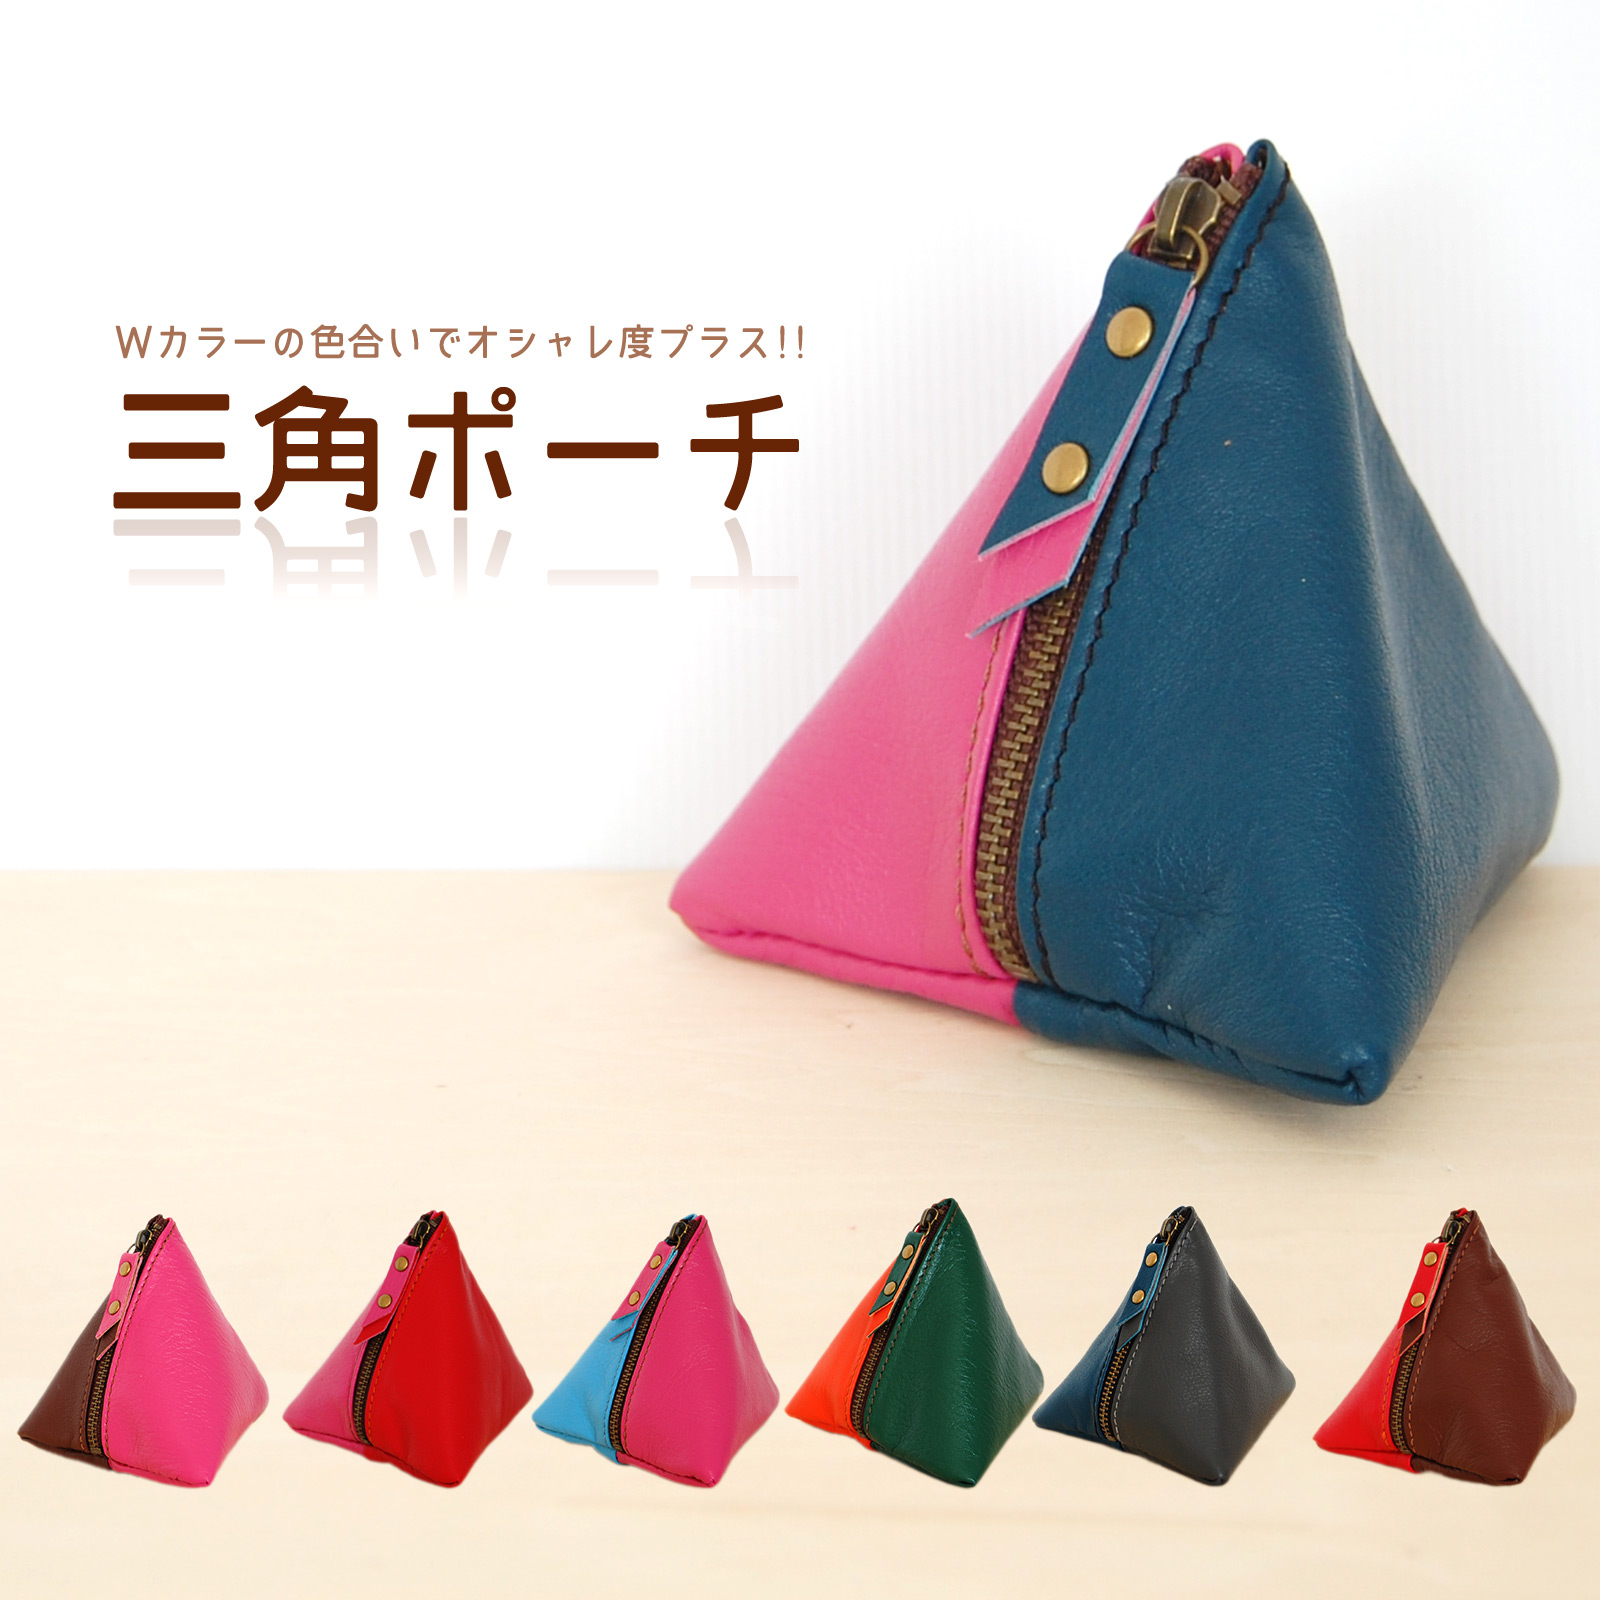 【楽天市場】三角レザーポーチ 本革 縦ファスナー 全10色 : 革小物の